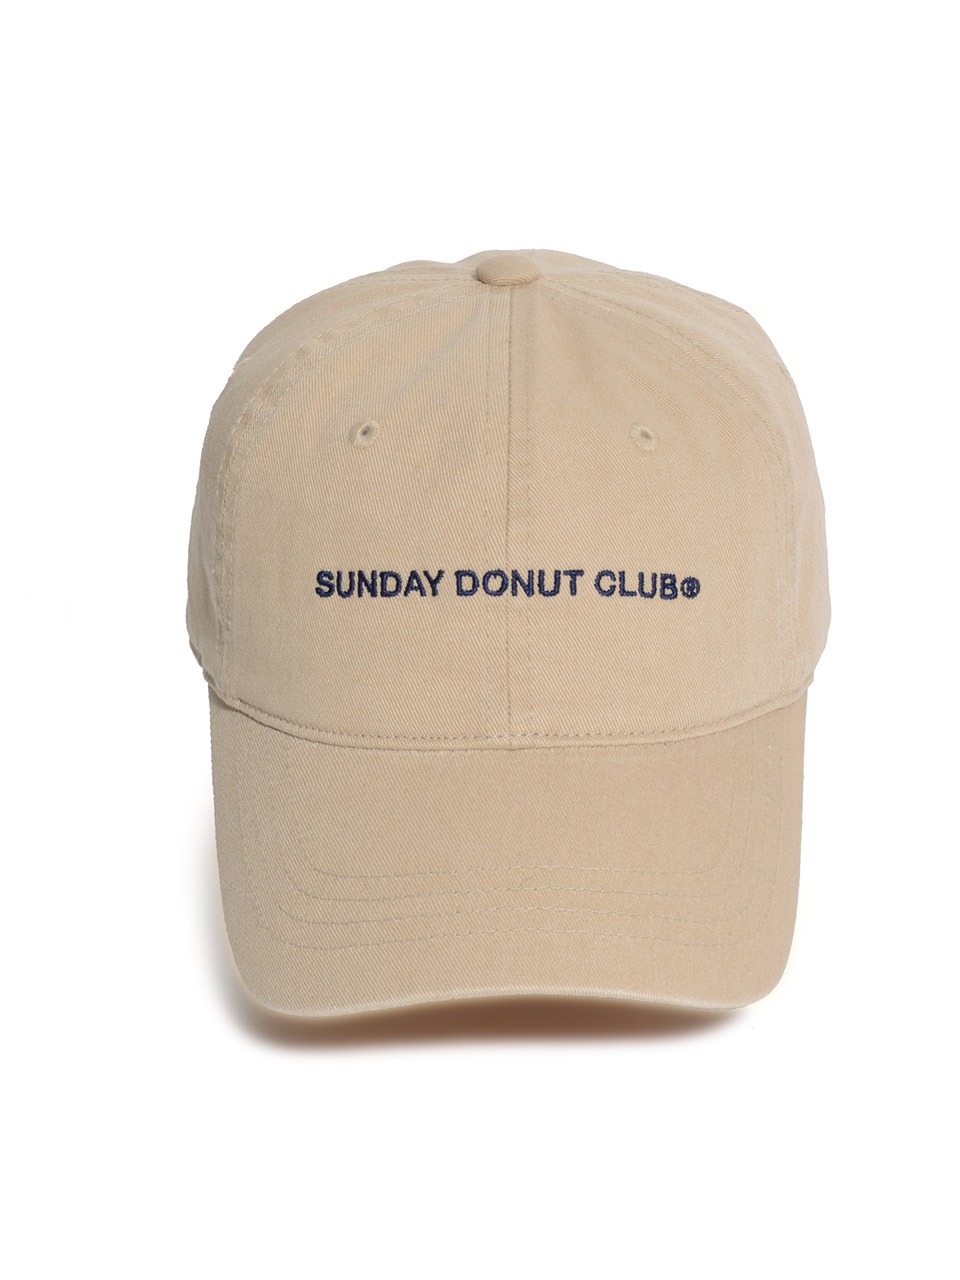 SUNDAY DONUT CLUB CAP [Beige]